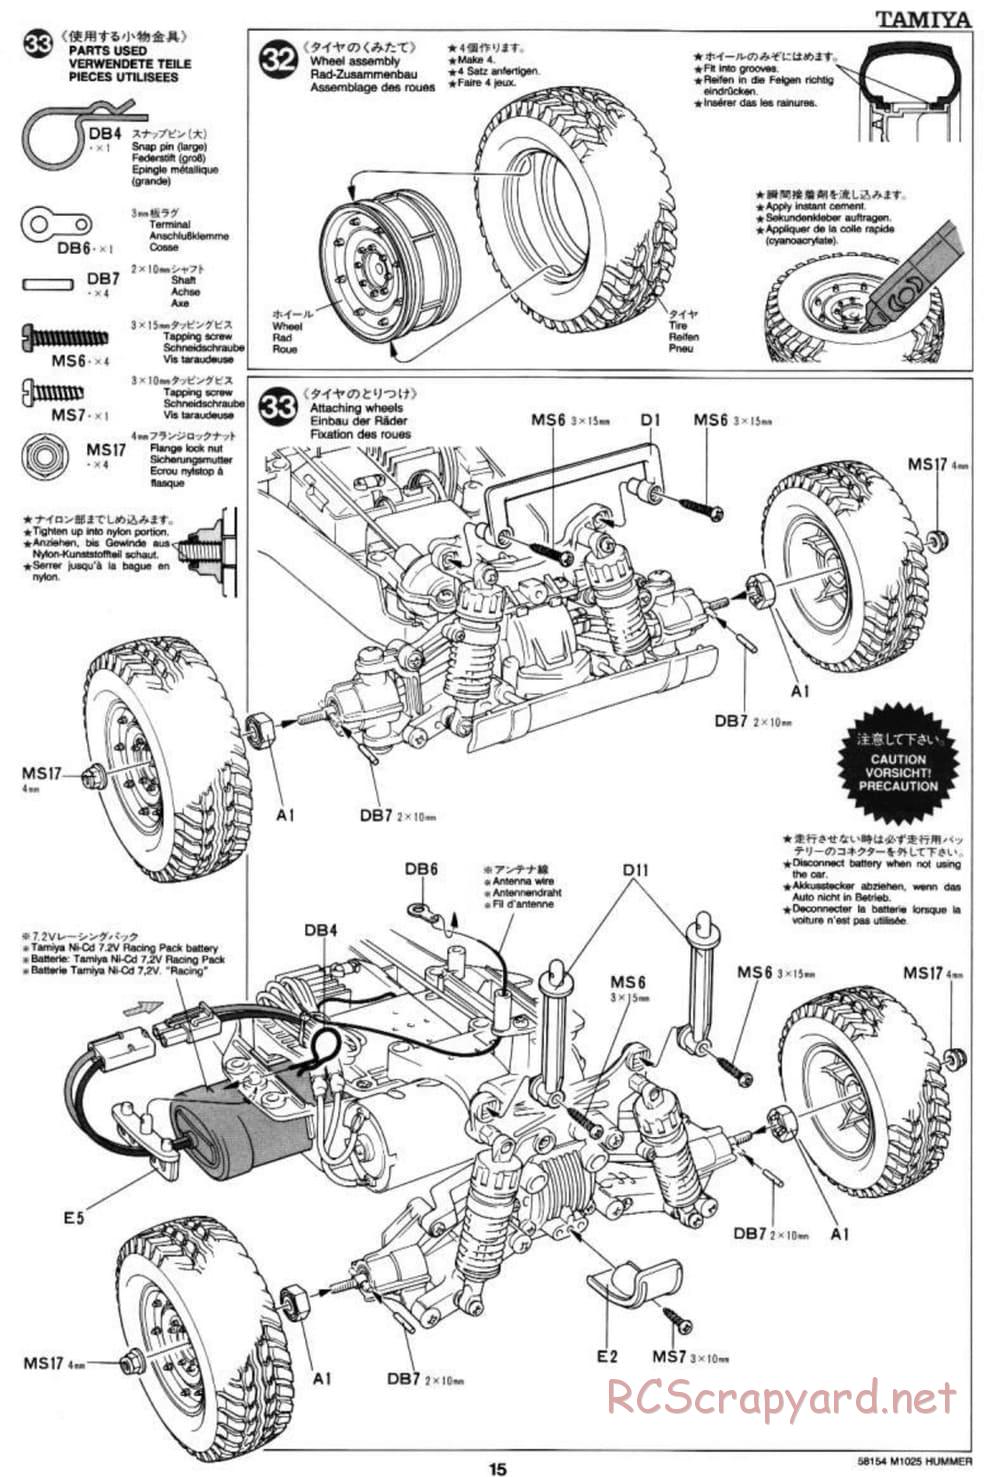 Tamiya - M1025 Hummer - TA-01 Chassis - Manual - Page 15